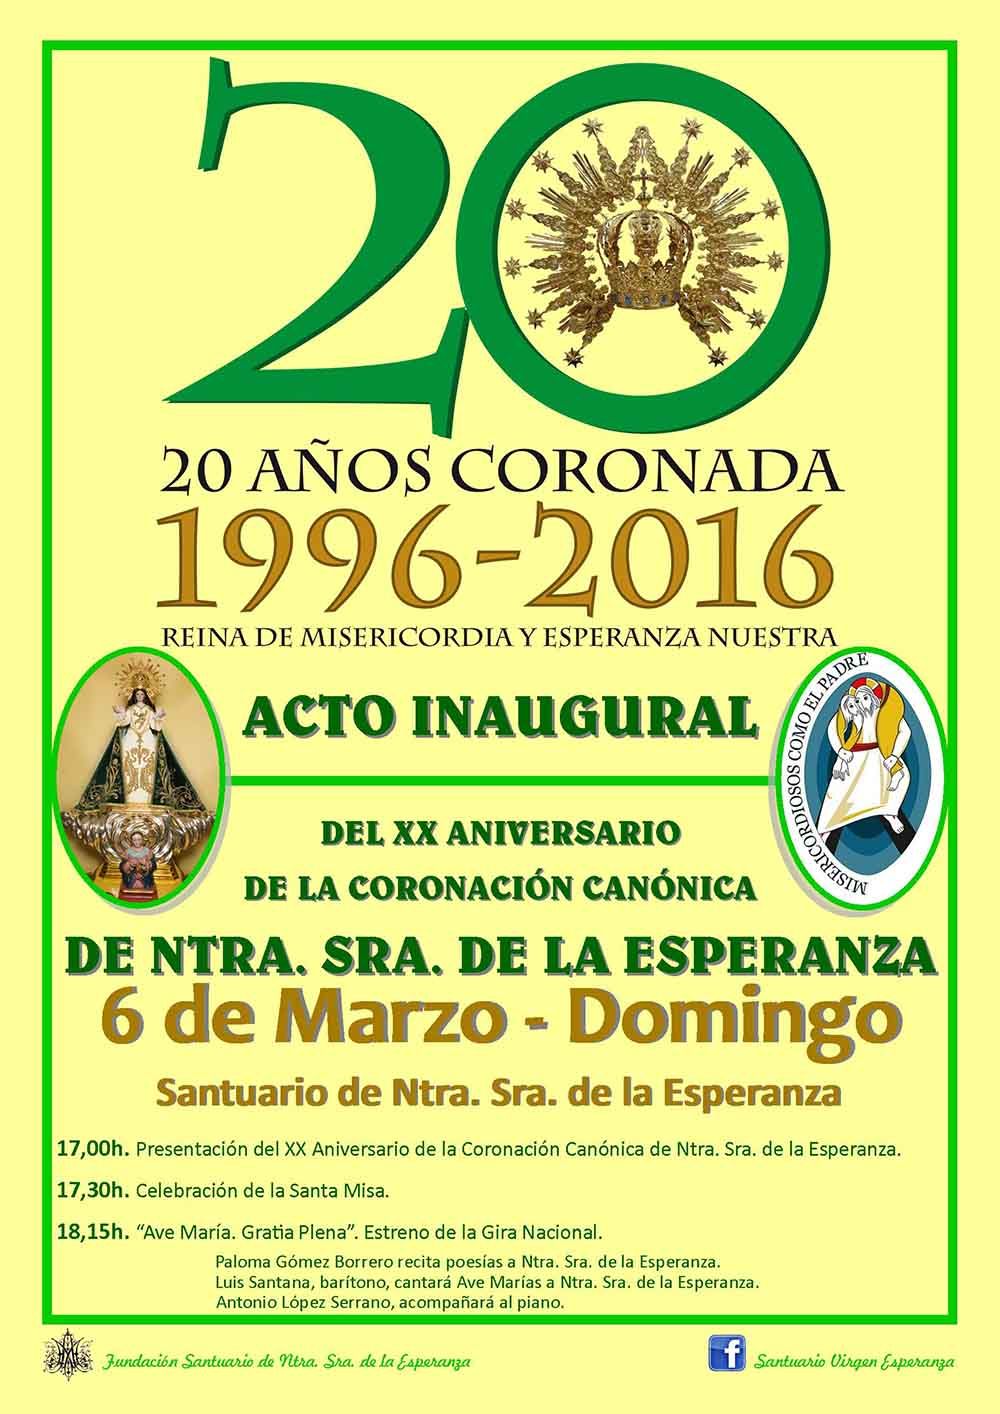 Presentación del Acto Inaugural del XX Aniversario de la Coronación Canónica de Ntra. Sra. de la Esperanza